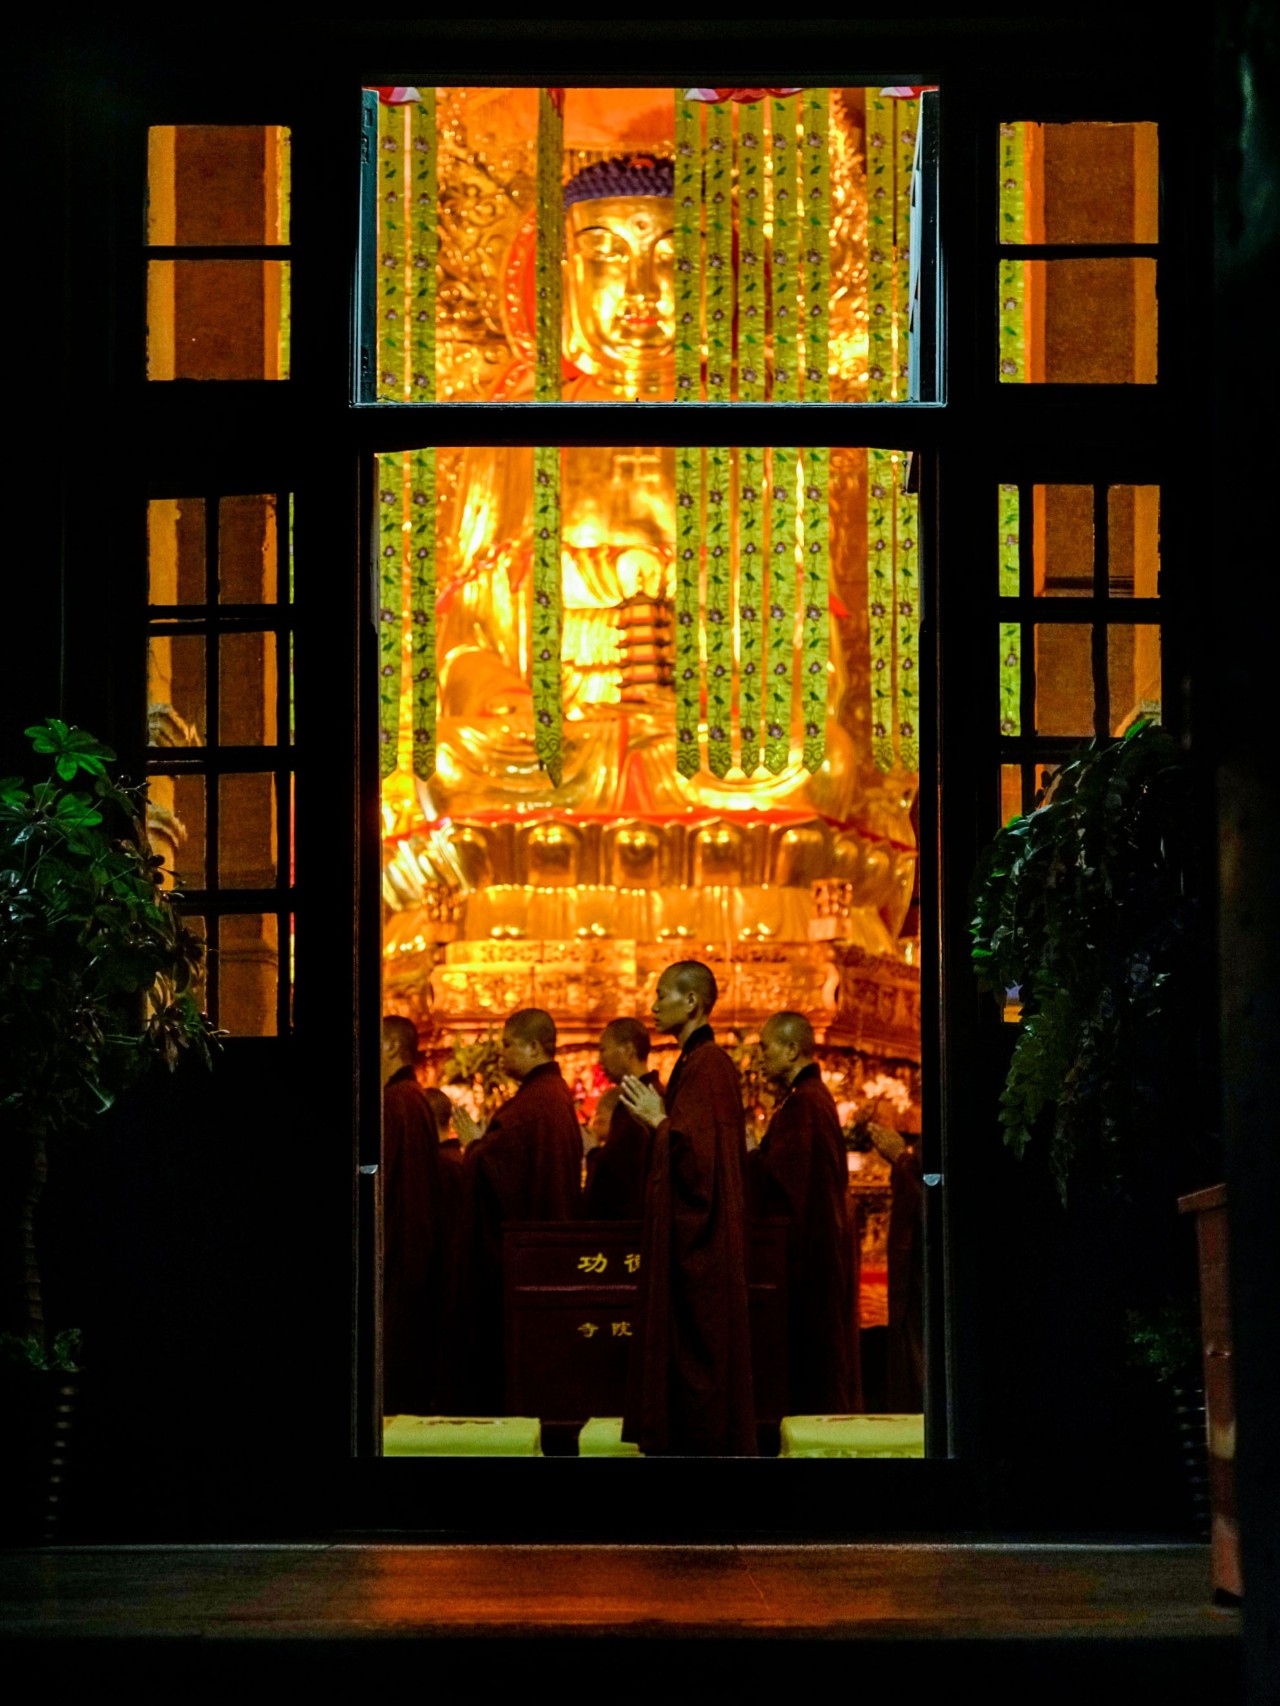 武汉闹市的尼姑庵，全中国最美寺庙古德寺